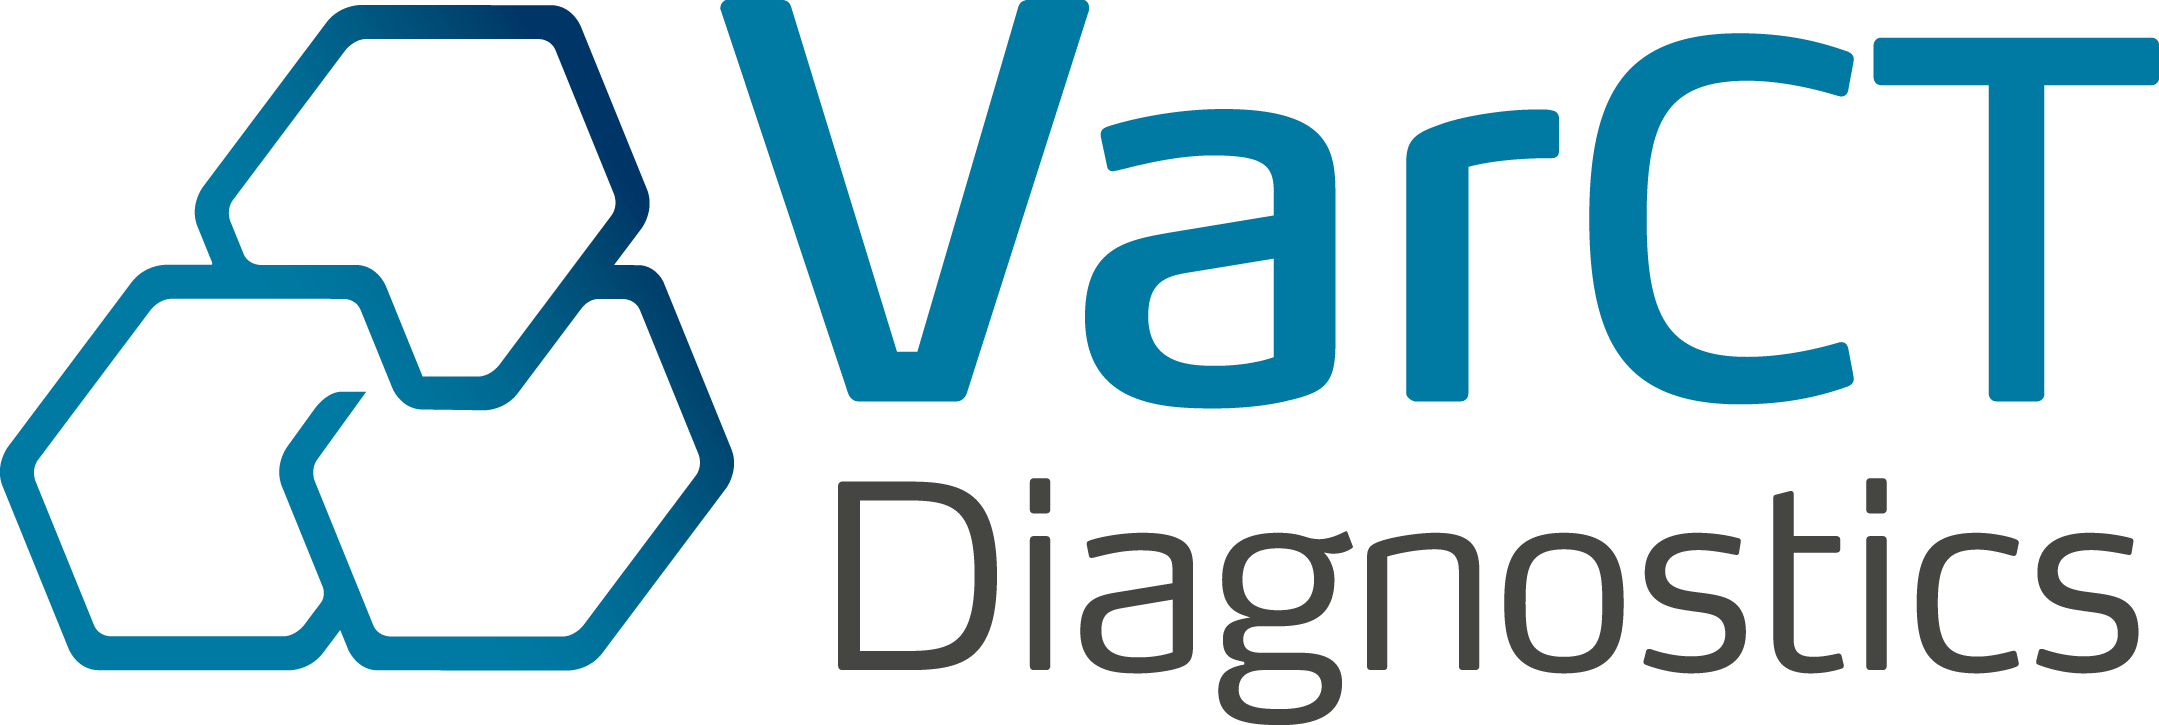 VARCT Diagnostics